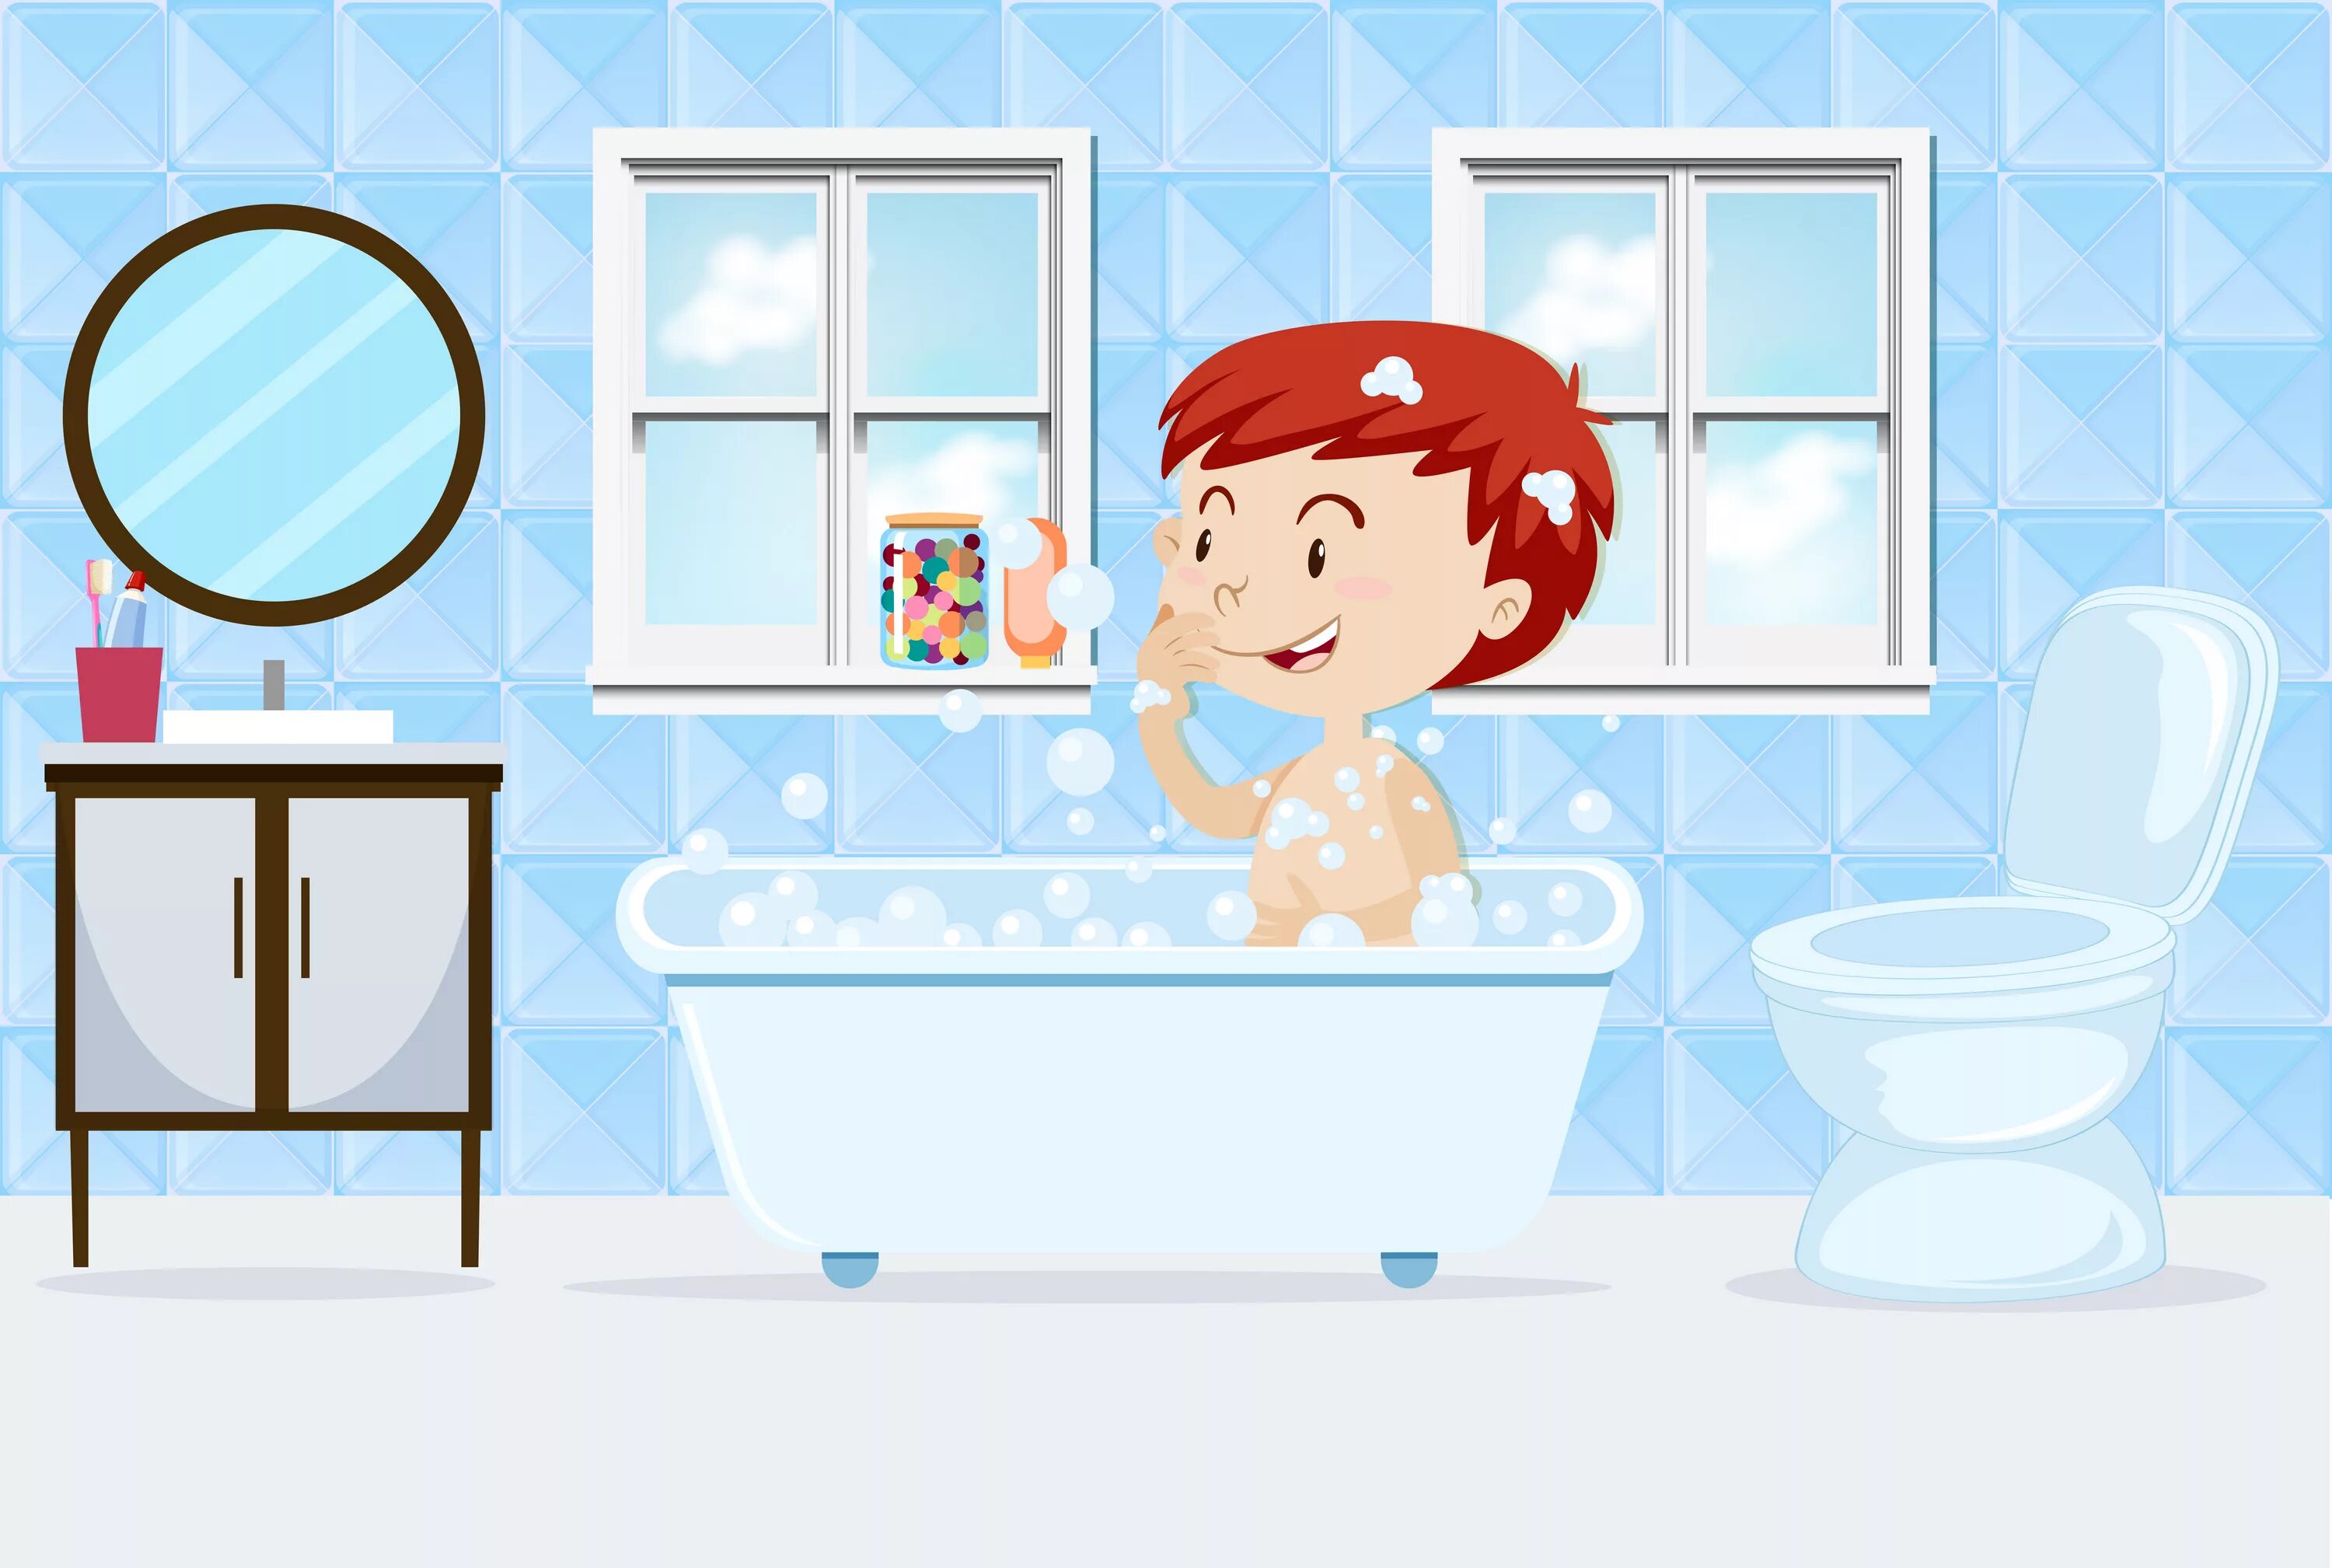 He has a bath. Мальчик моется. Рисунок ванной. Мальчик моется в ванной. Детский сад мыться душе.